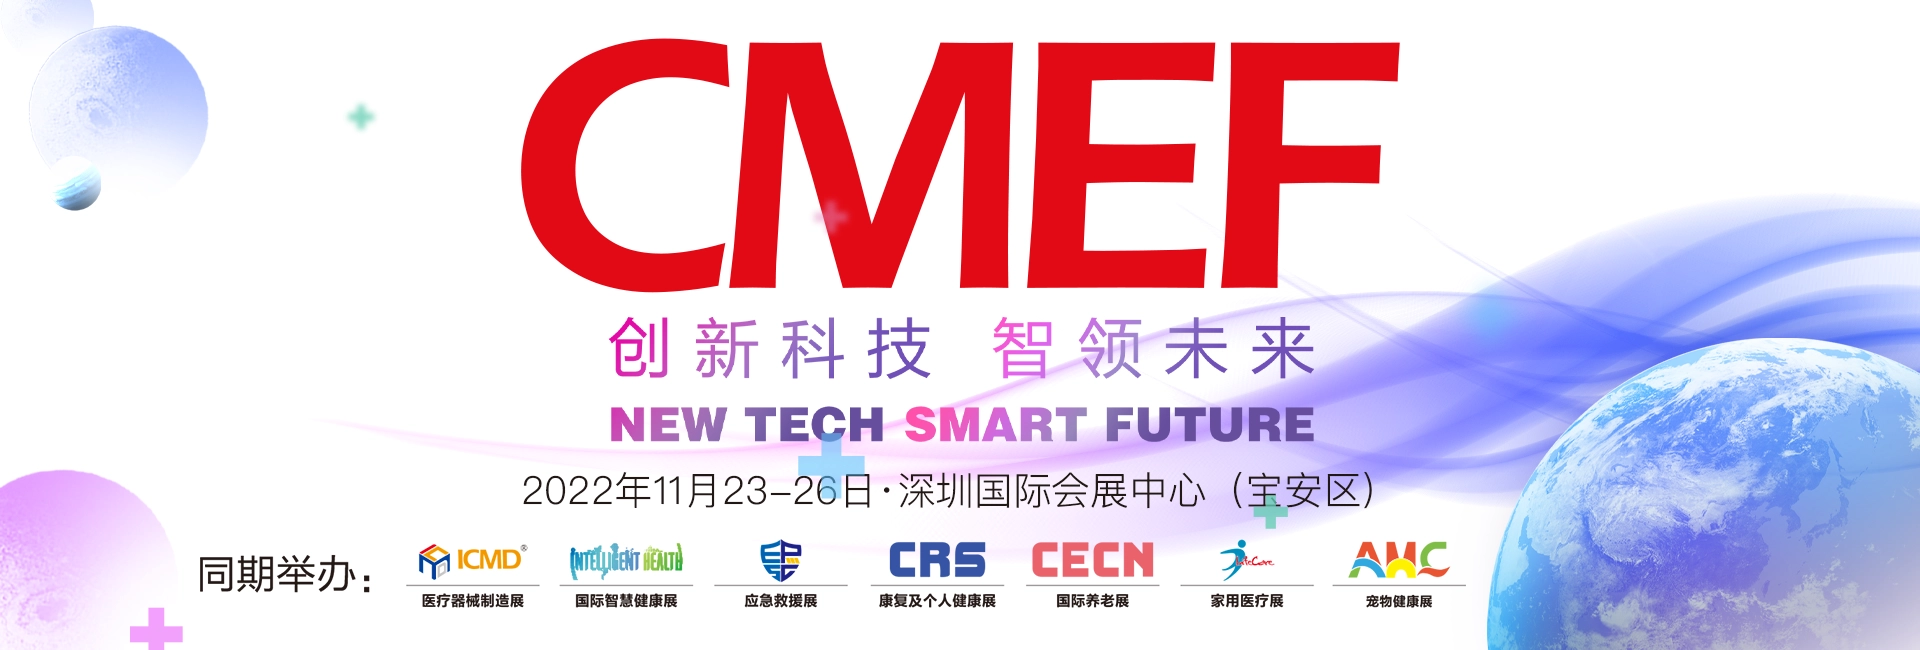 出展深圳CMEF 2022展览